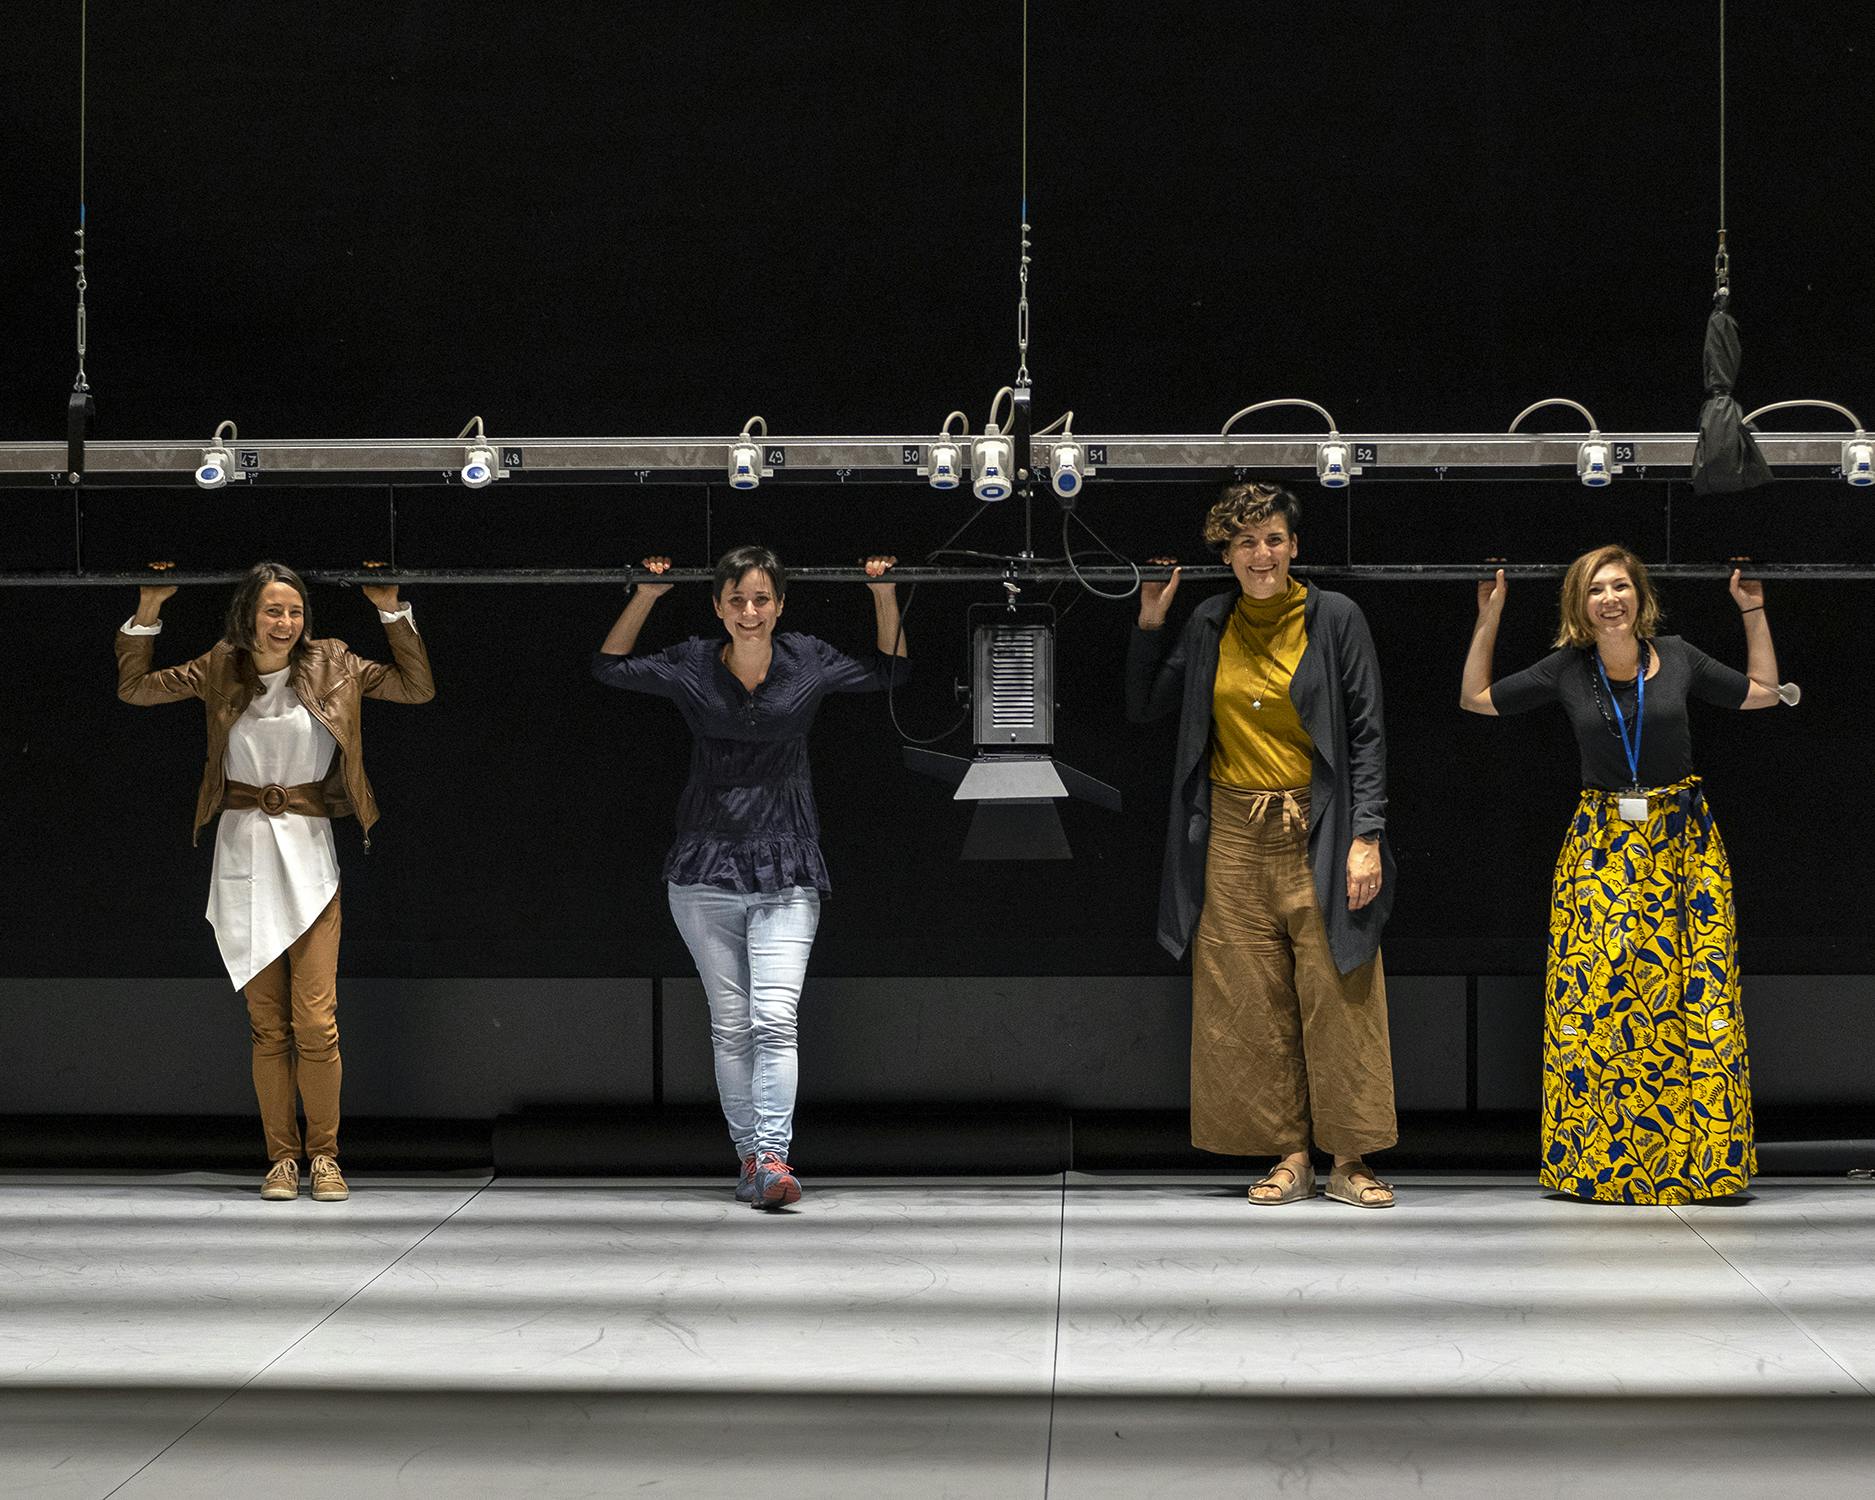 Gloria Stedile, Laura Marongiu, Anna Consolati, Susanna Caldonazzi on a theatre stage